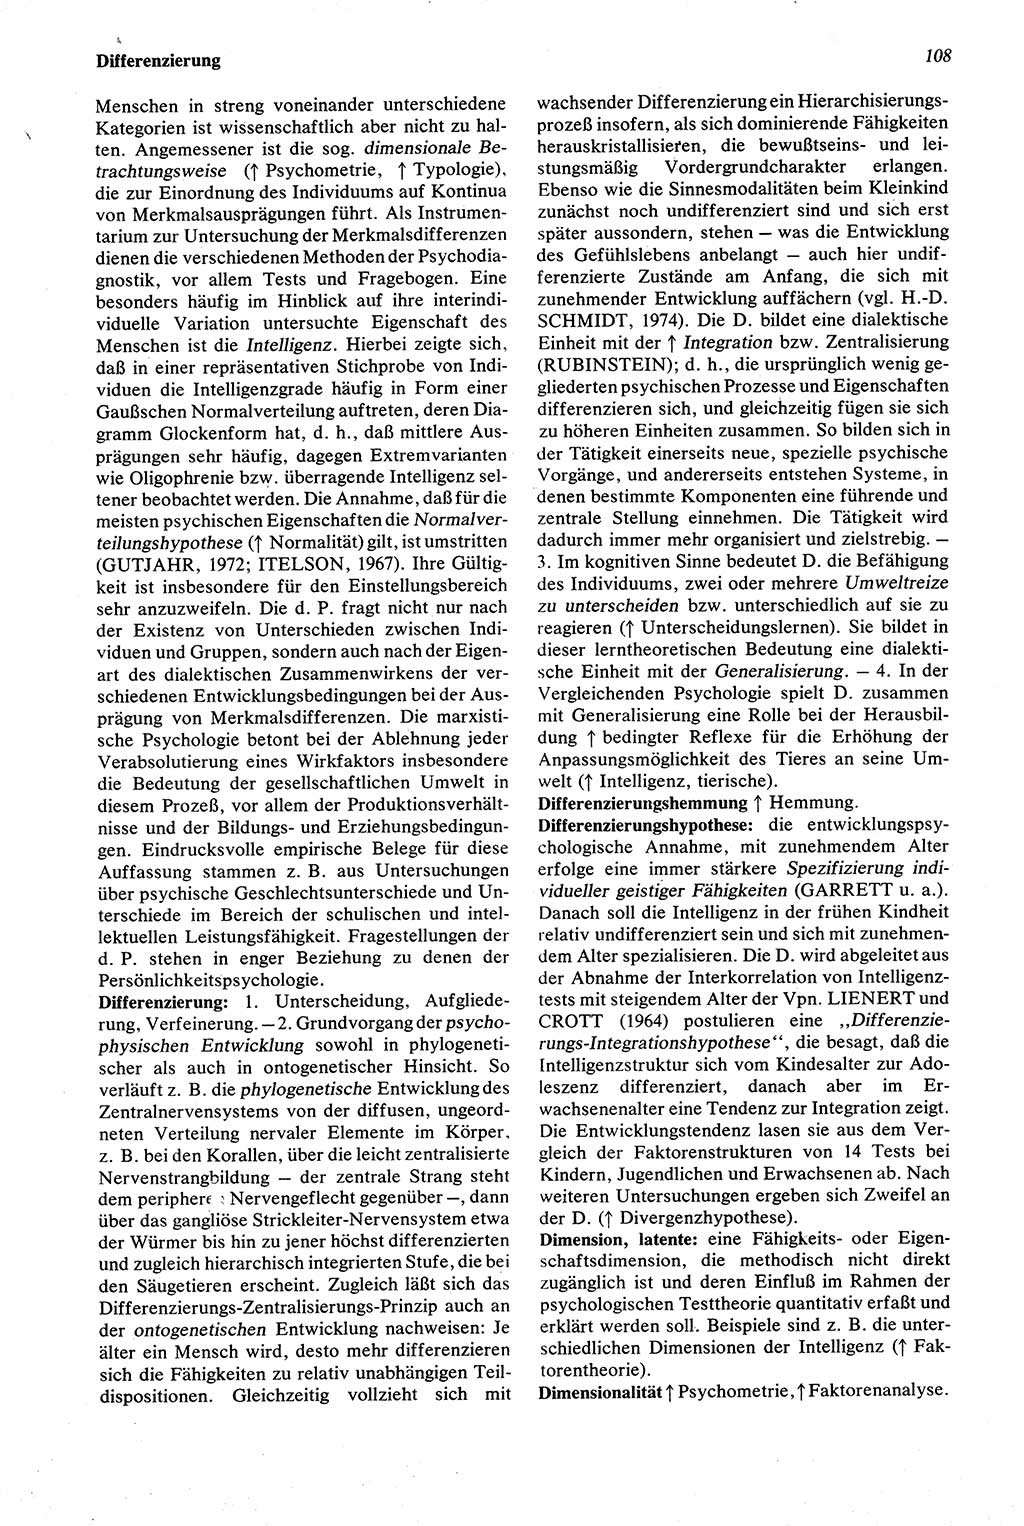 Wörterbuch der Psychologie [Deutsche Demokratische Republik (DDR)] 1976, Seite 108 (Wb. Psych. DDR 1976, S. 108)